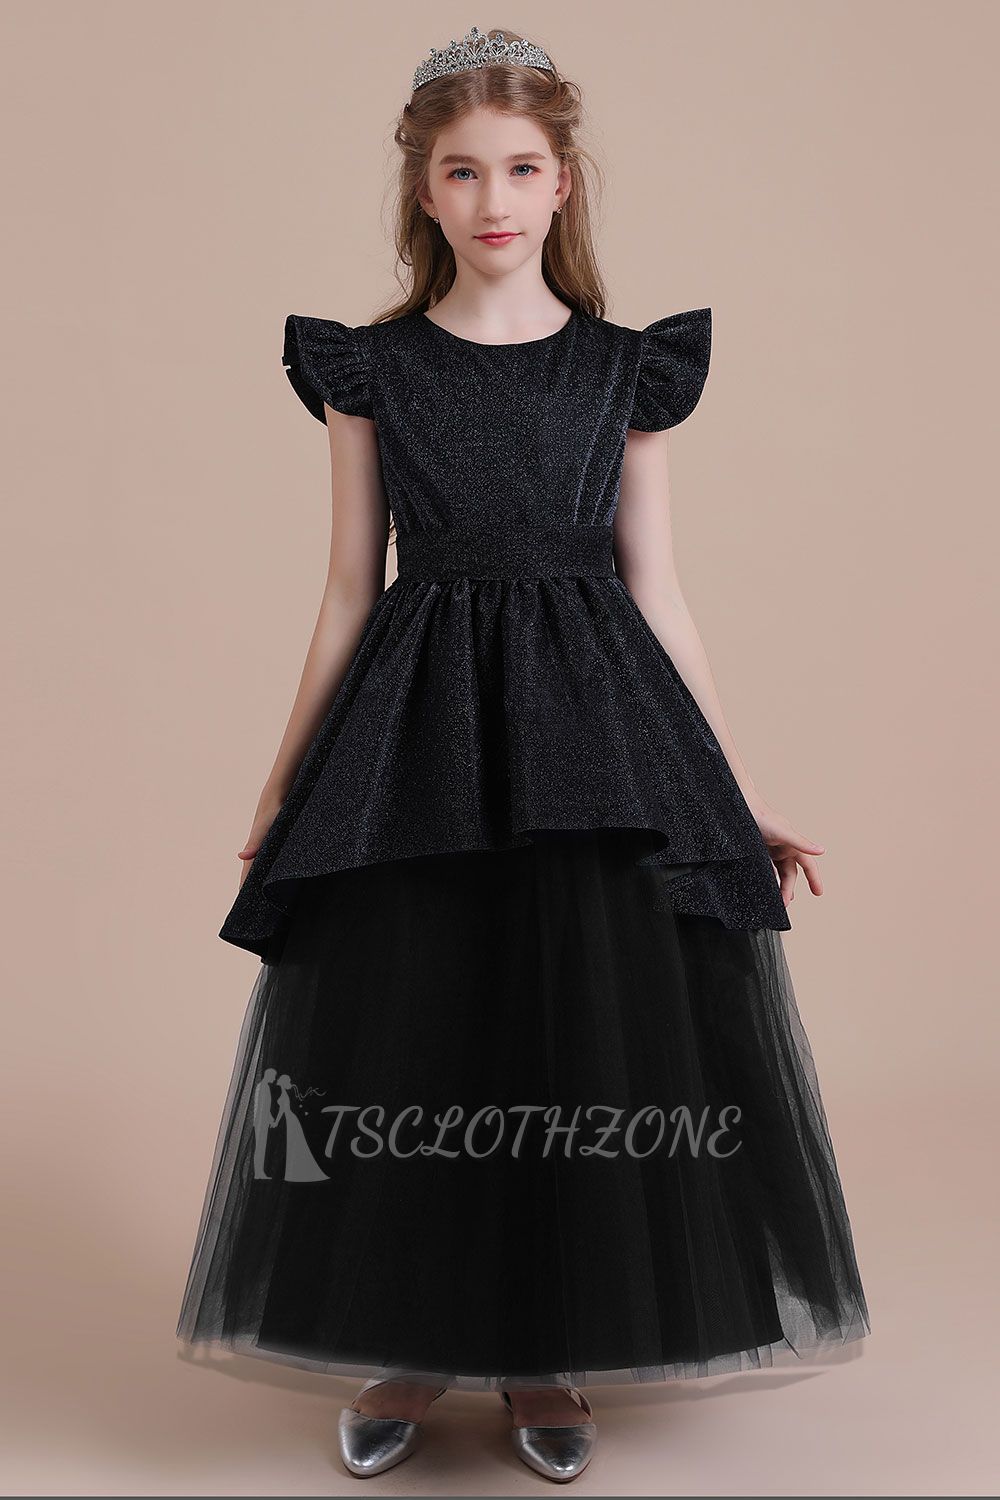 Autumn Tulle A-line Flower Girl Dress | Glitter Cap Sleeve Little Girls Pegeant Dress Online